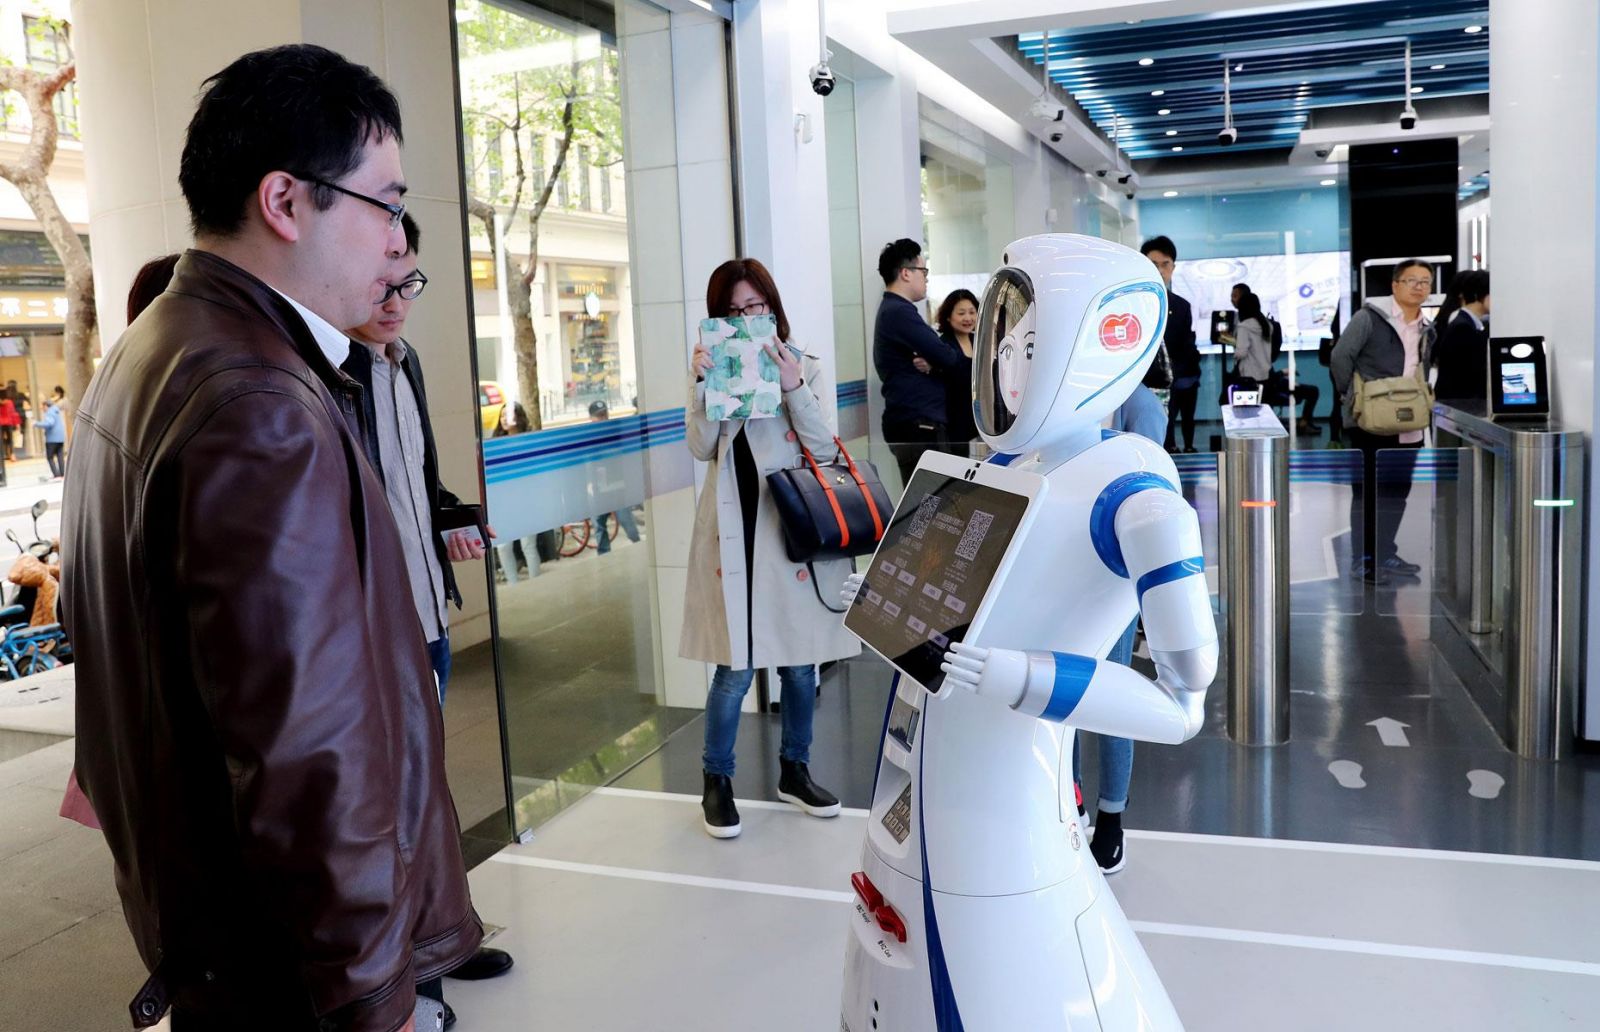 Một robot hỗ trợ khách trong ngân hàng ở Trung Quốc. Ảnh: Xinhua